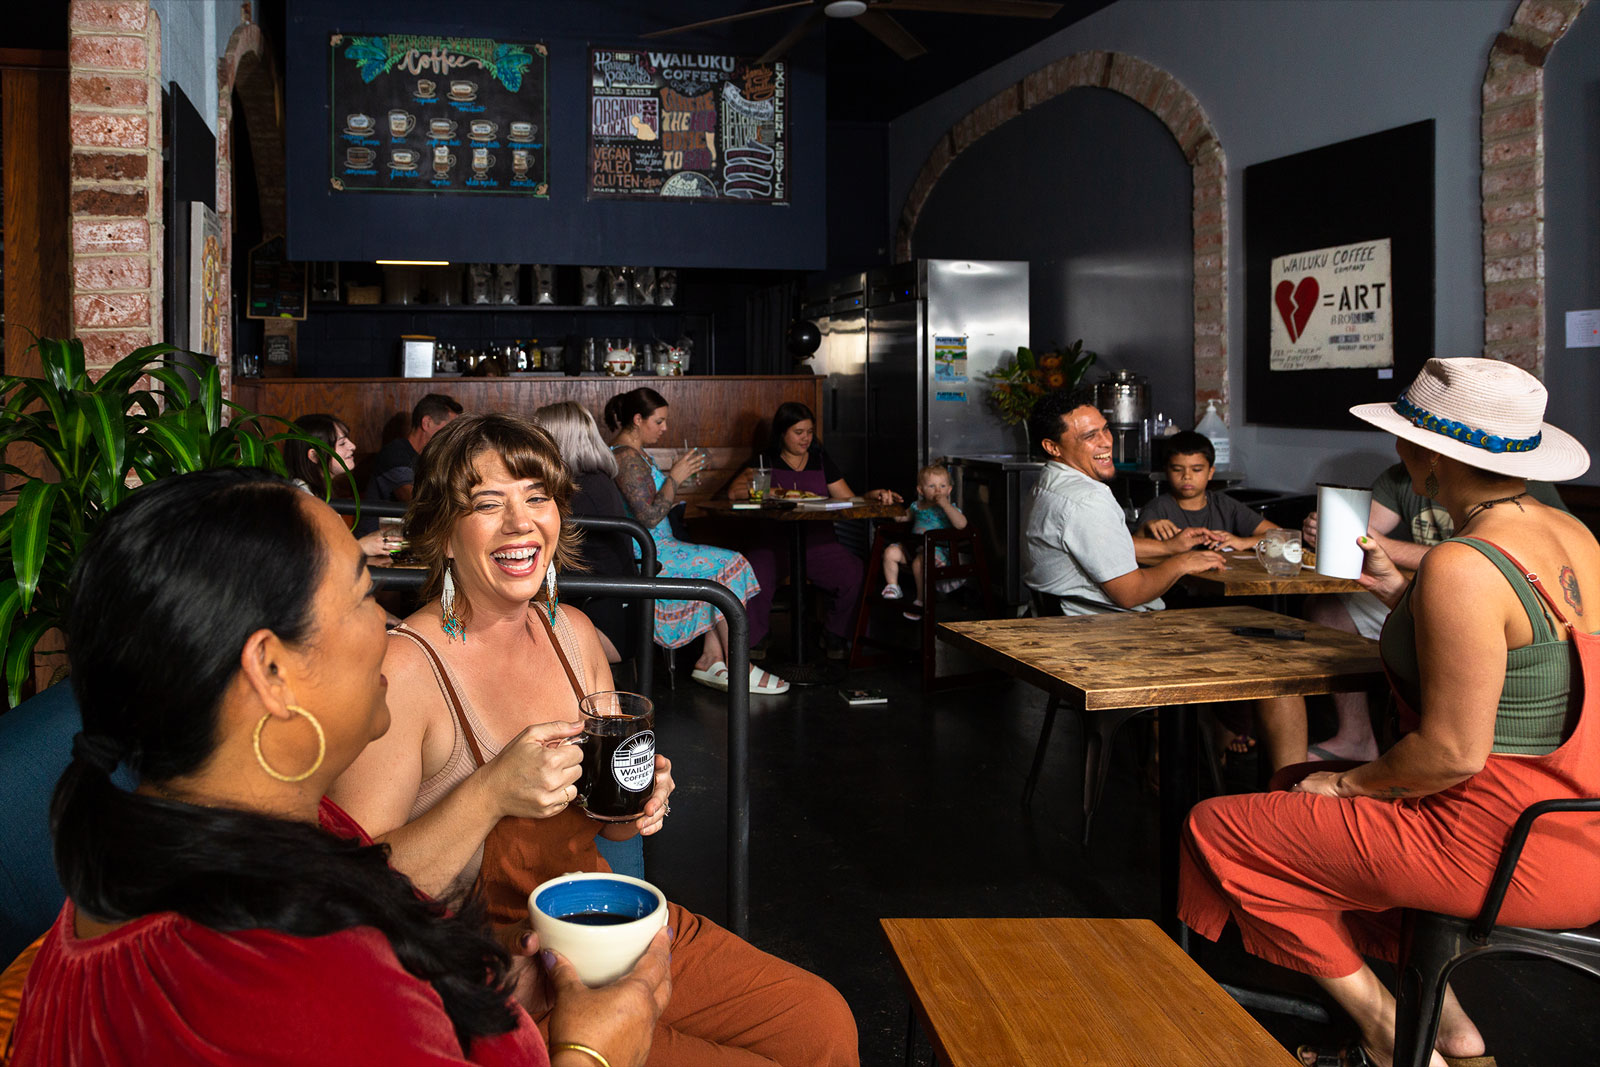 People come together and socialize around tables at a Wailuku Coffee Company Maui café.